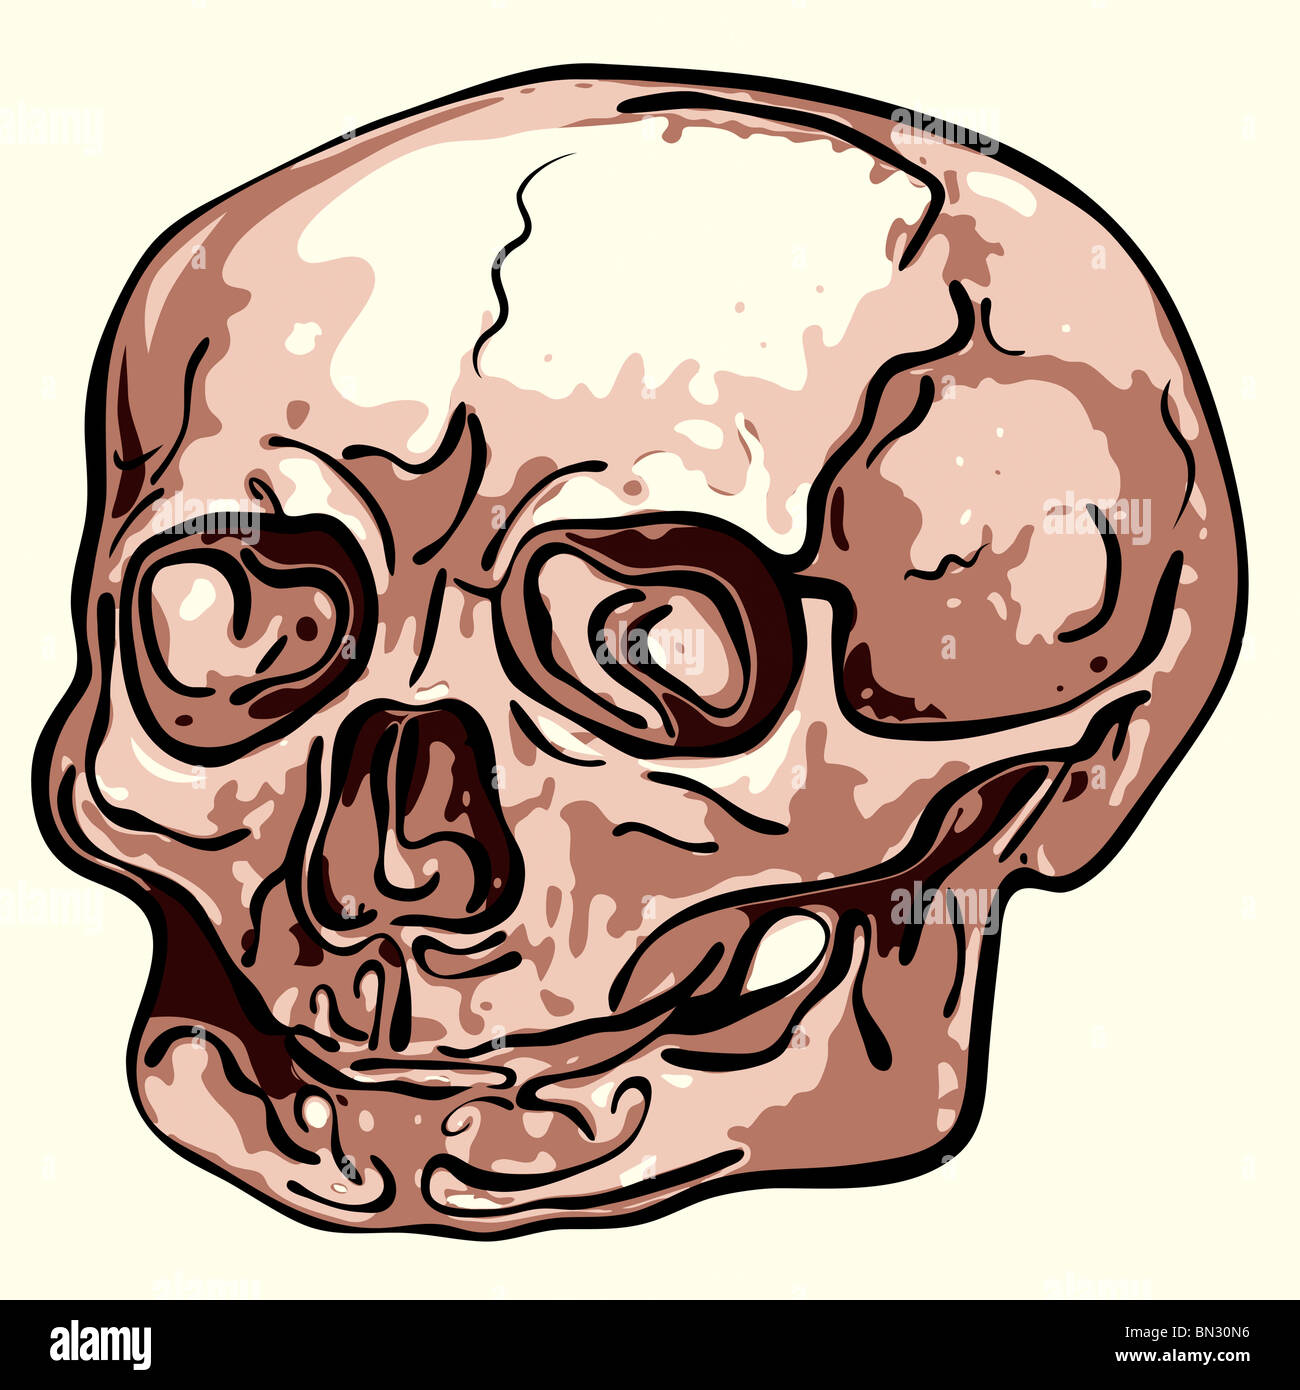 Extraño cráneo humano Foto de stock